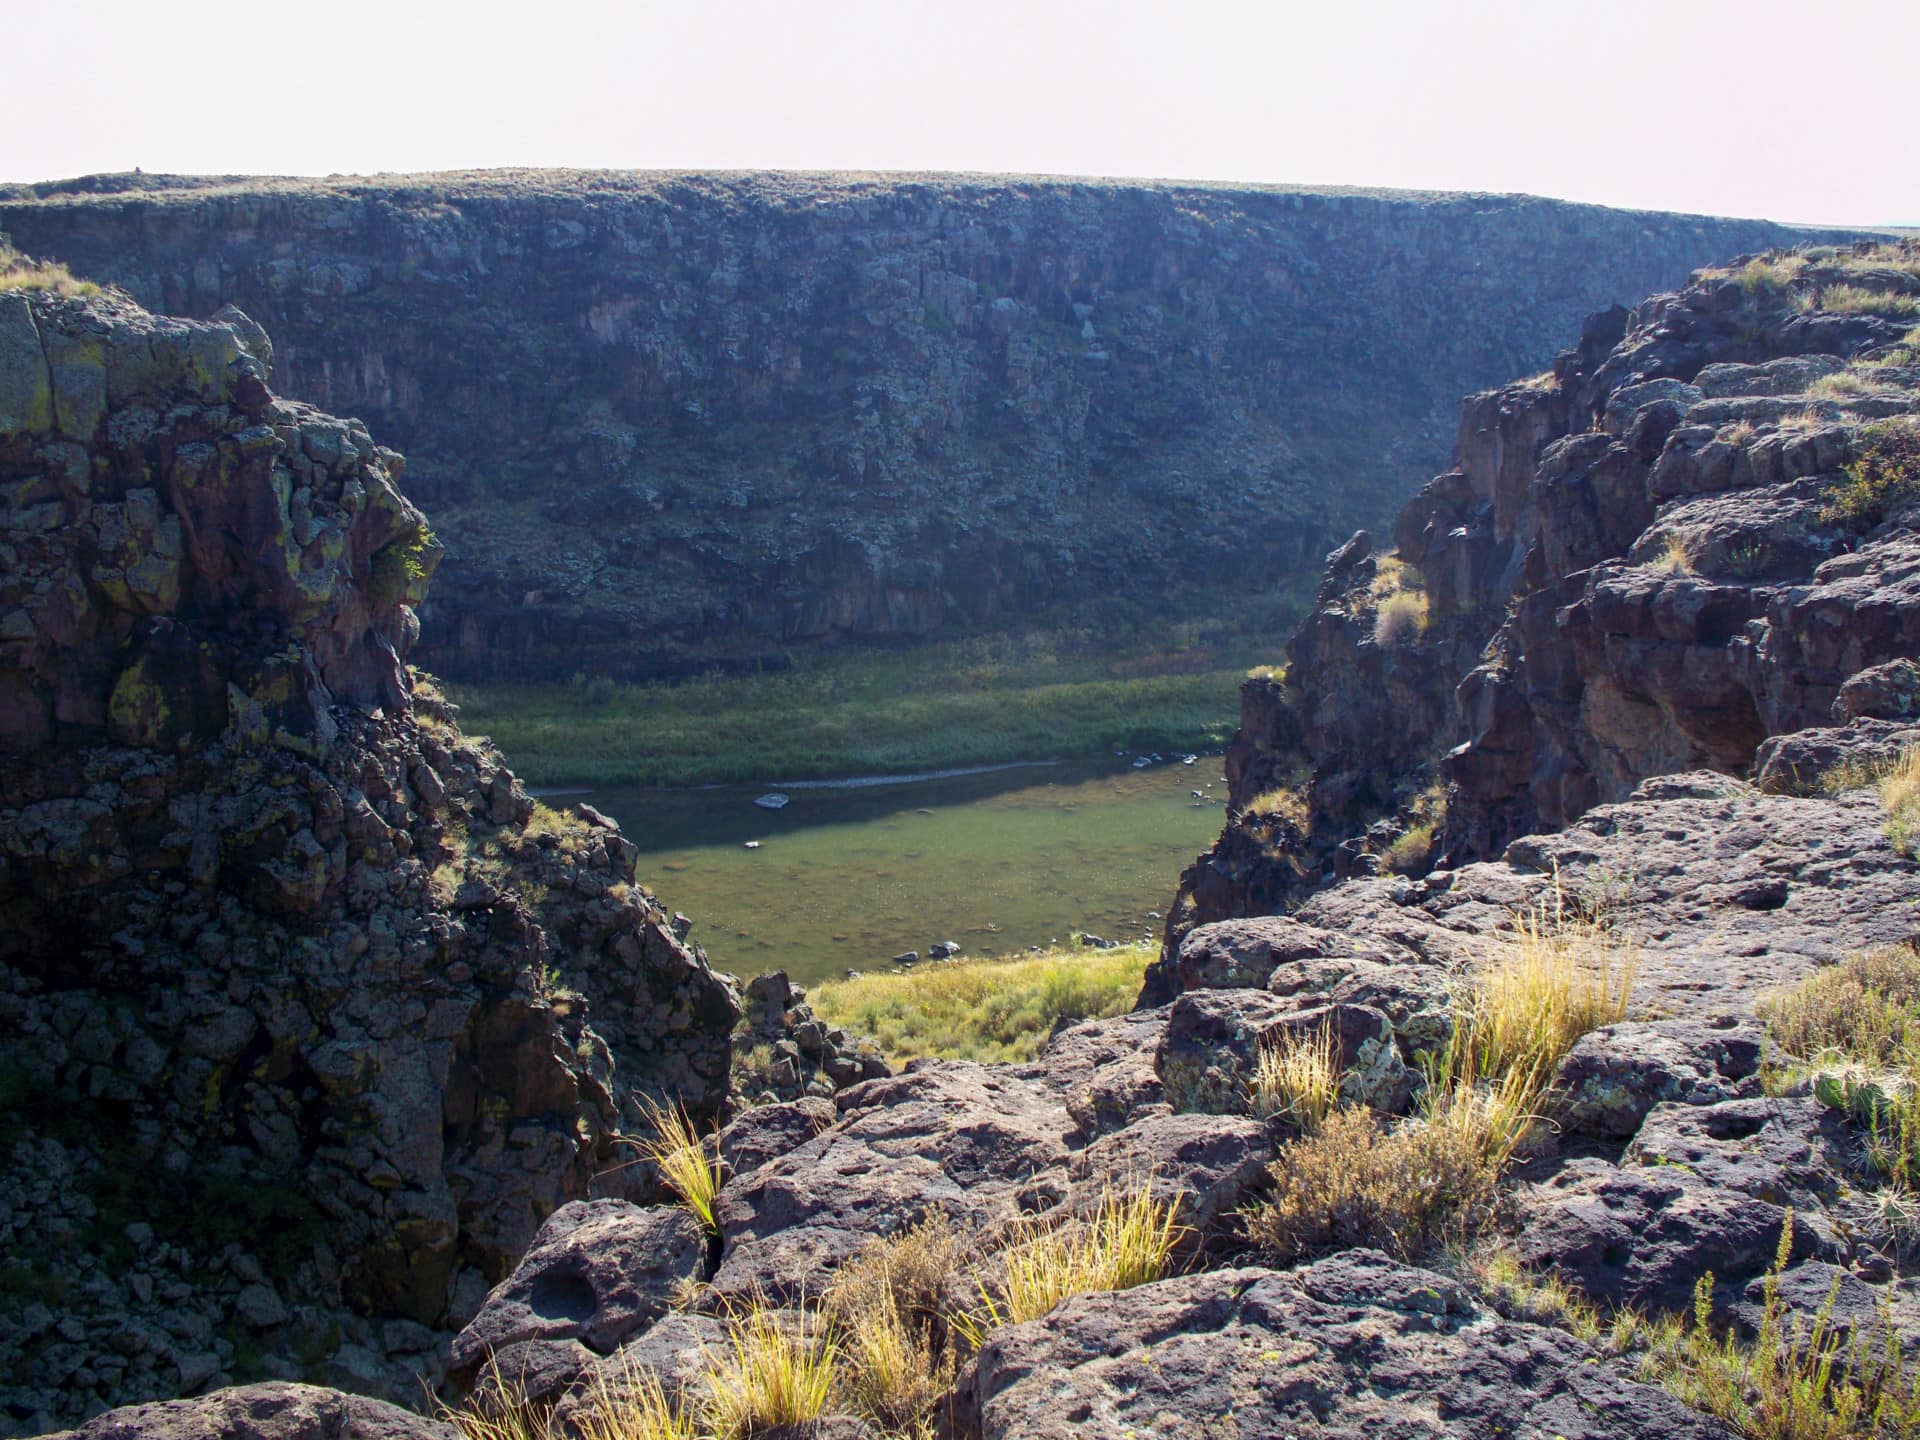 Canyon cut arroyo drop river view Colorado Rio Grande Del Norte Ranch